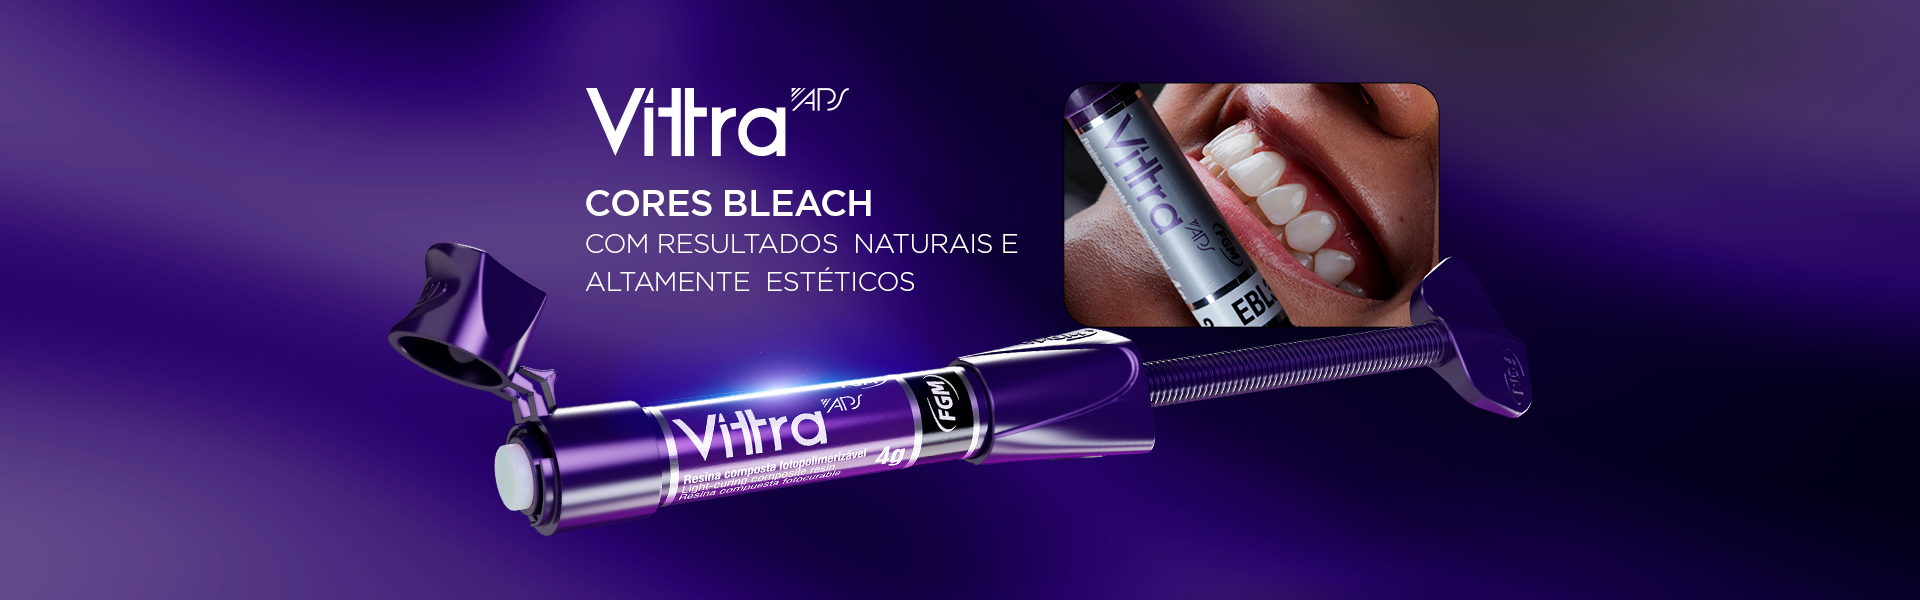 Capa VitraAps CoresBleach - Resinas Vittra, cores Bleach